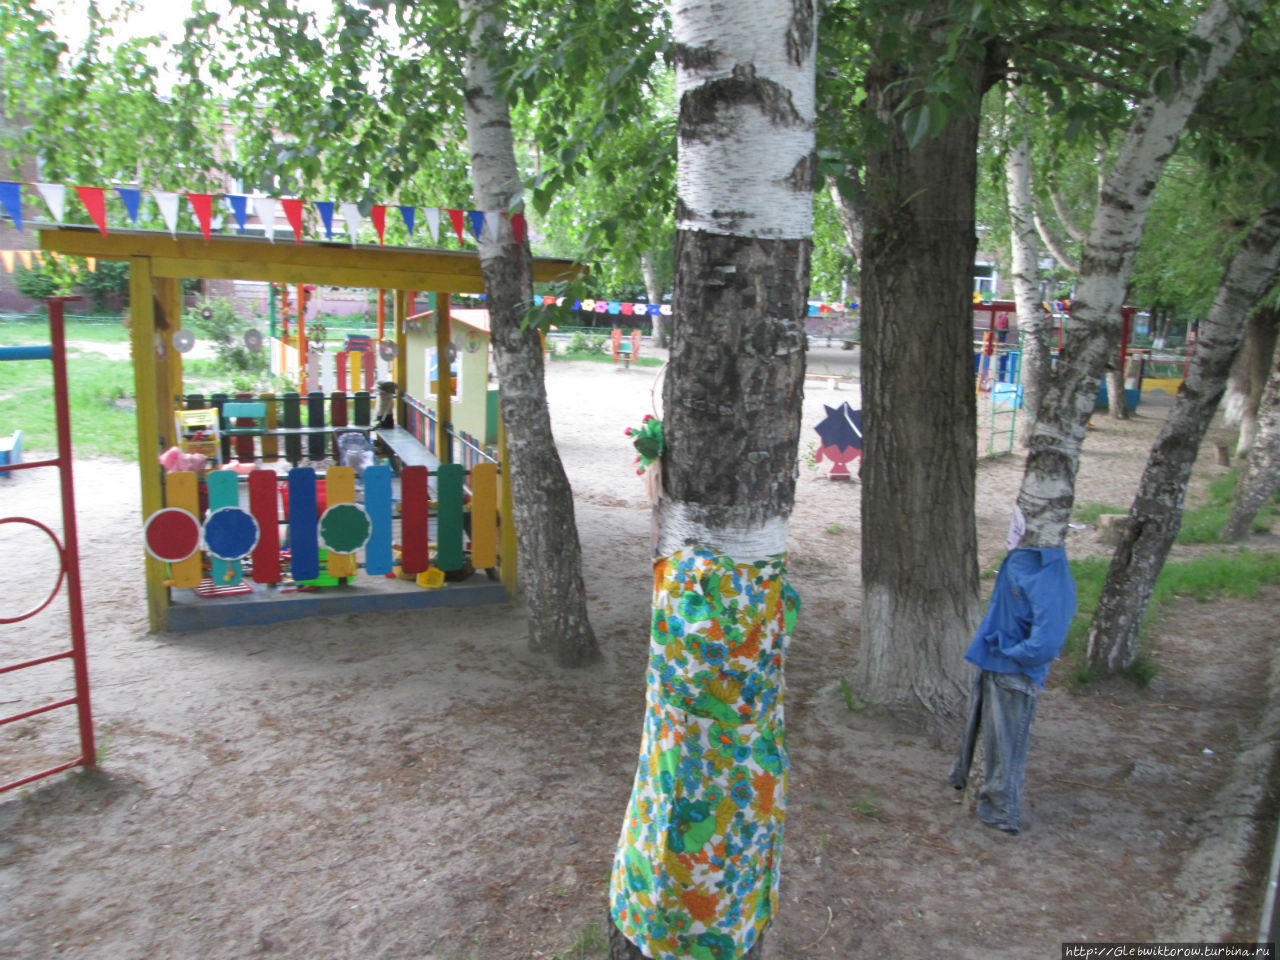 Нестандартная достопримечательность — детский сад Тюмень, Россия